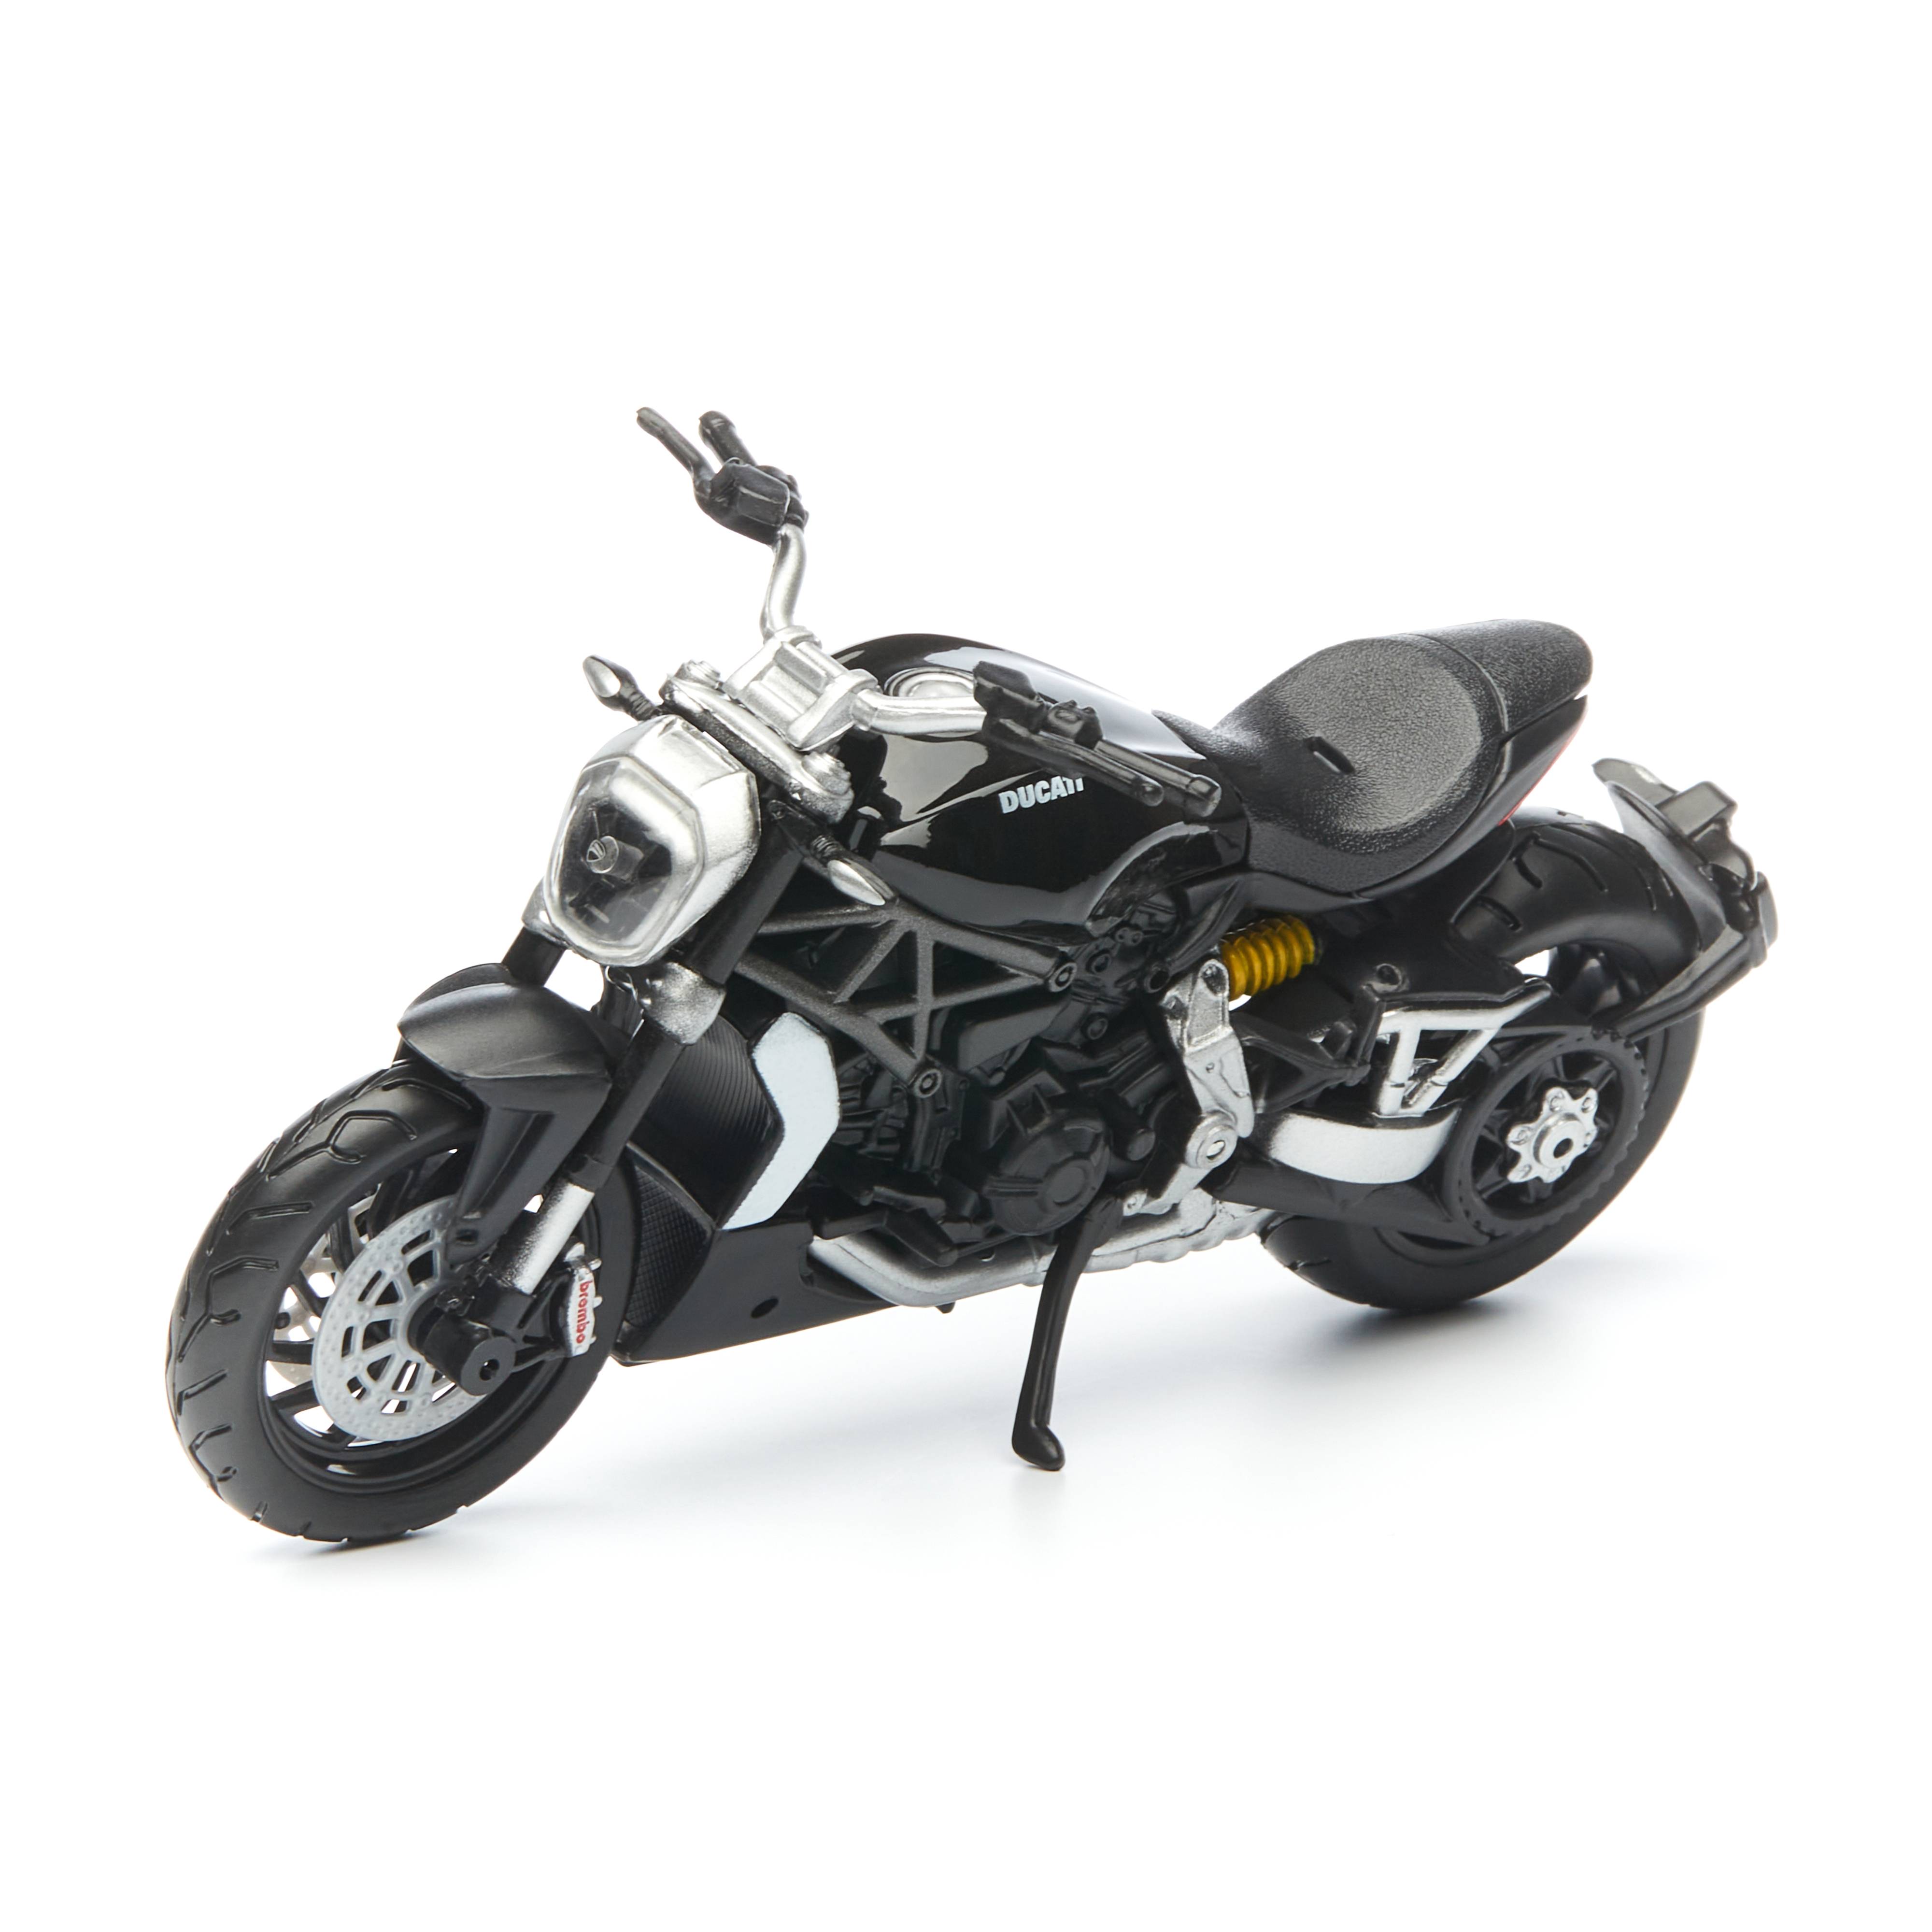 Мотоцикл коллекционный Bburago 1:18 CYCLE XDIAVEL S DUCATI bburago 1 18 2016 ducati xdiavel s die cast vehicles collectible motorcycle model toys